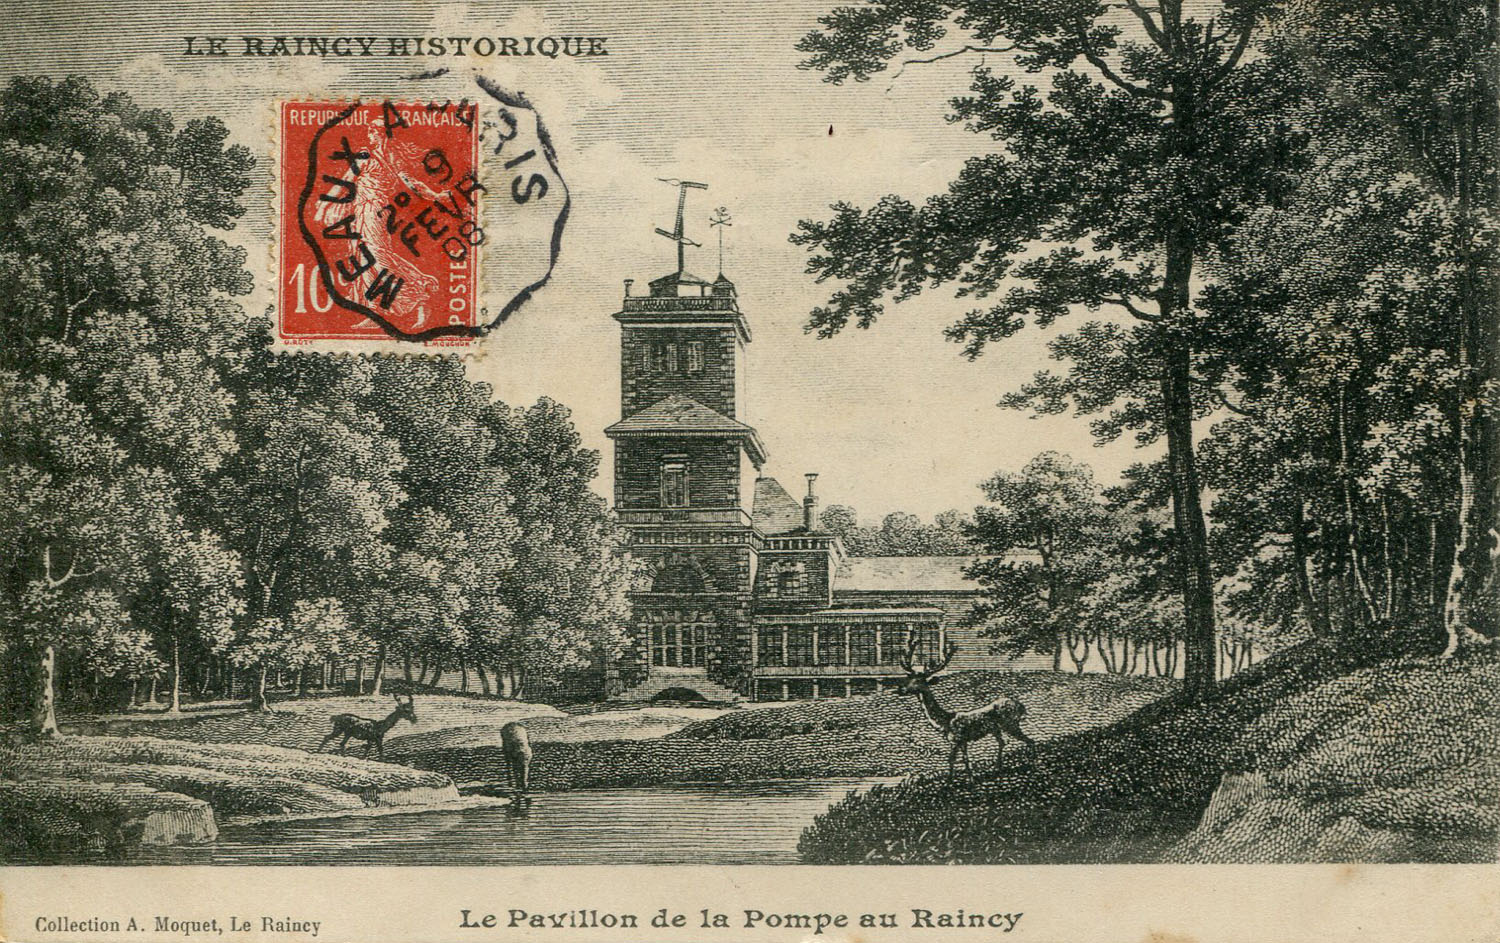 Le Raincy Historique - Le Pavillon de la Pompe au Raincy